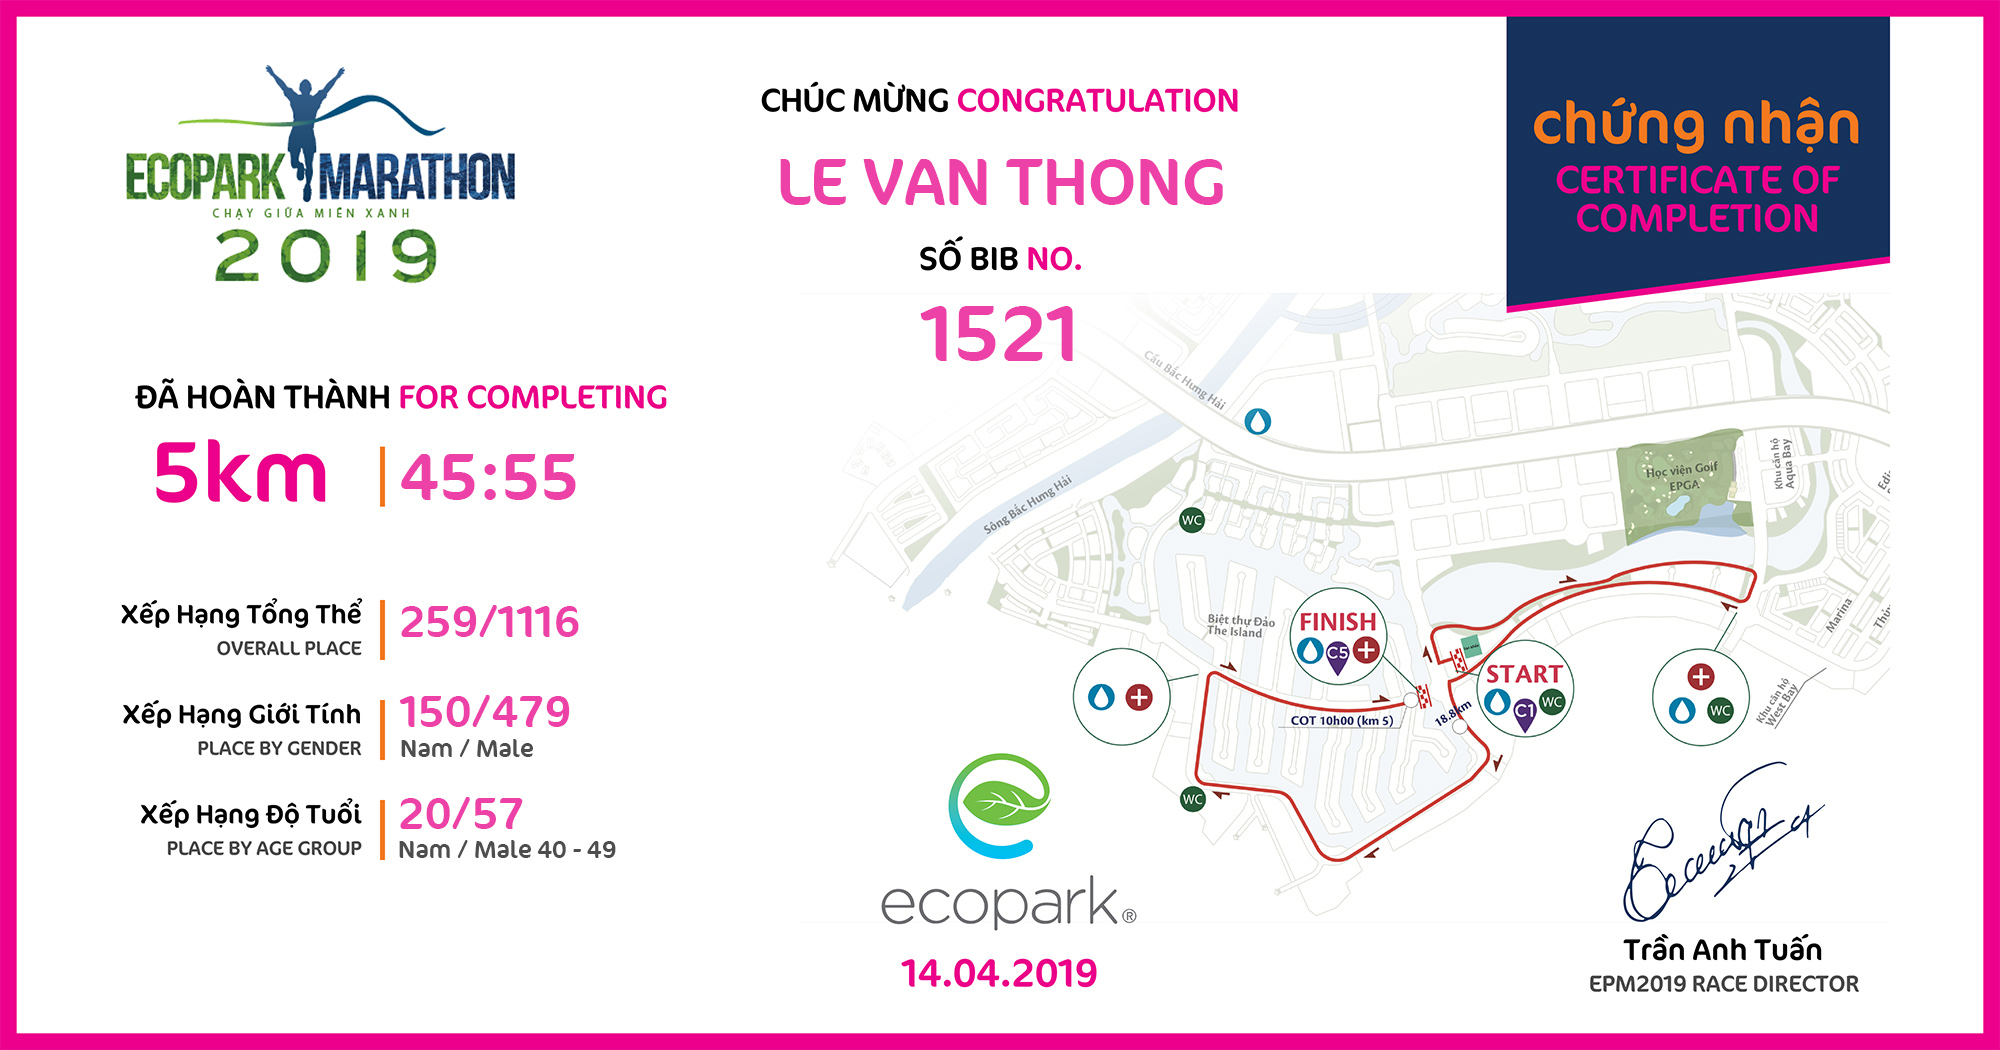 1521 - Le Van Thong